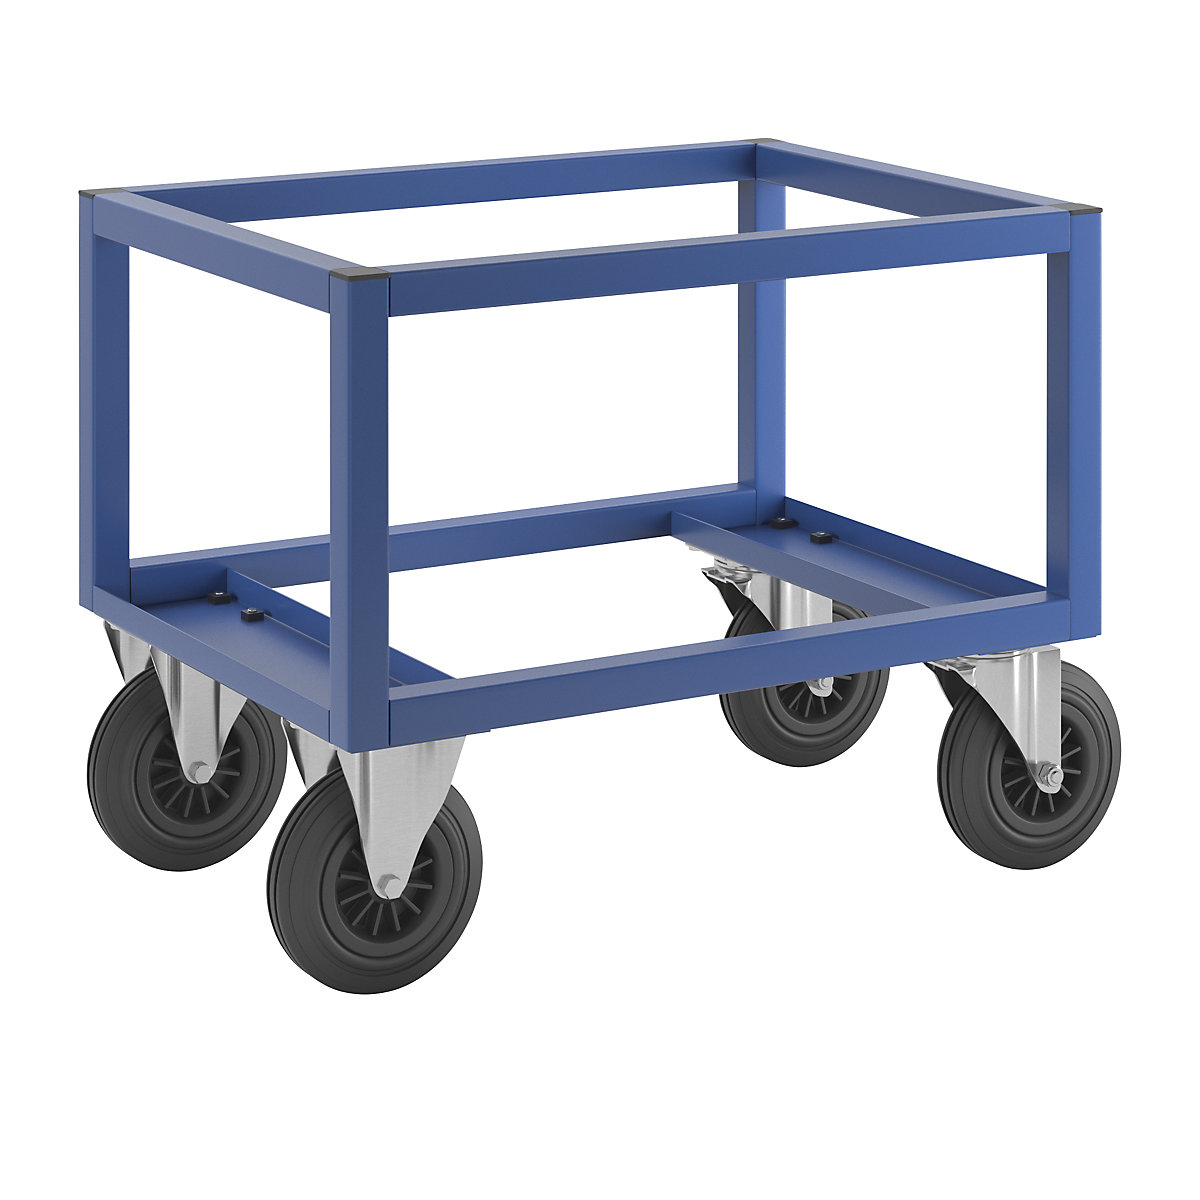 Transportni voziček za palete KM221 – Kongamek, DxŠxV 800 x 600 x 650 mm, modre barve, 2 vrtljivi in 2 fiksni kolesi-6